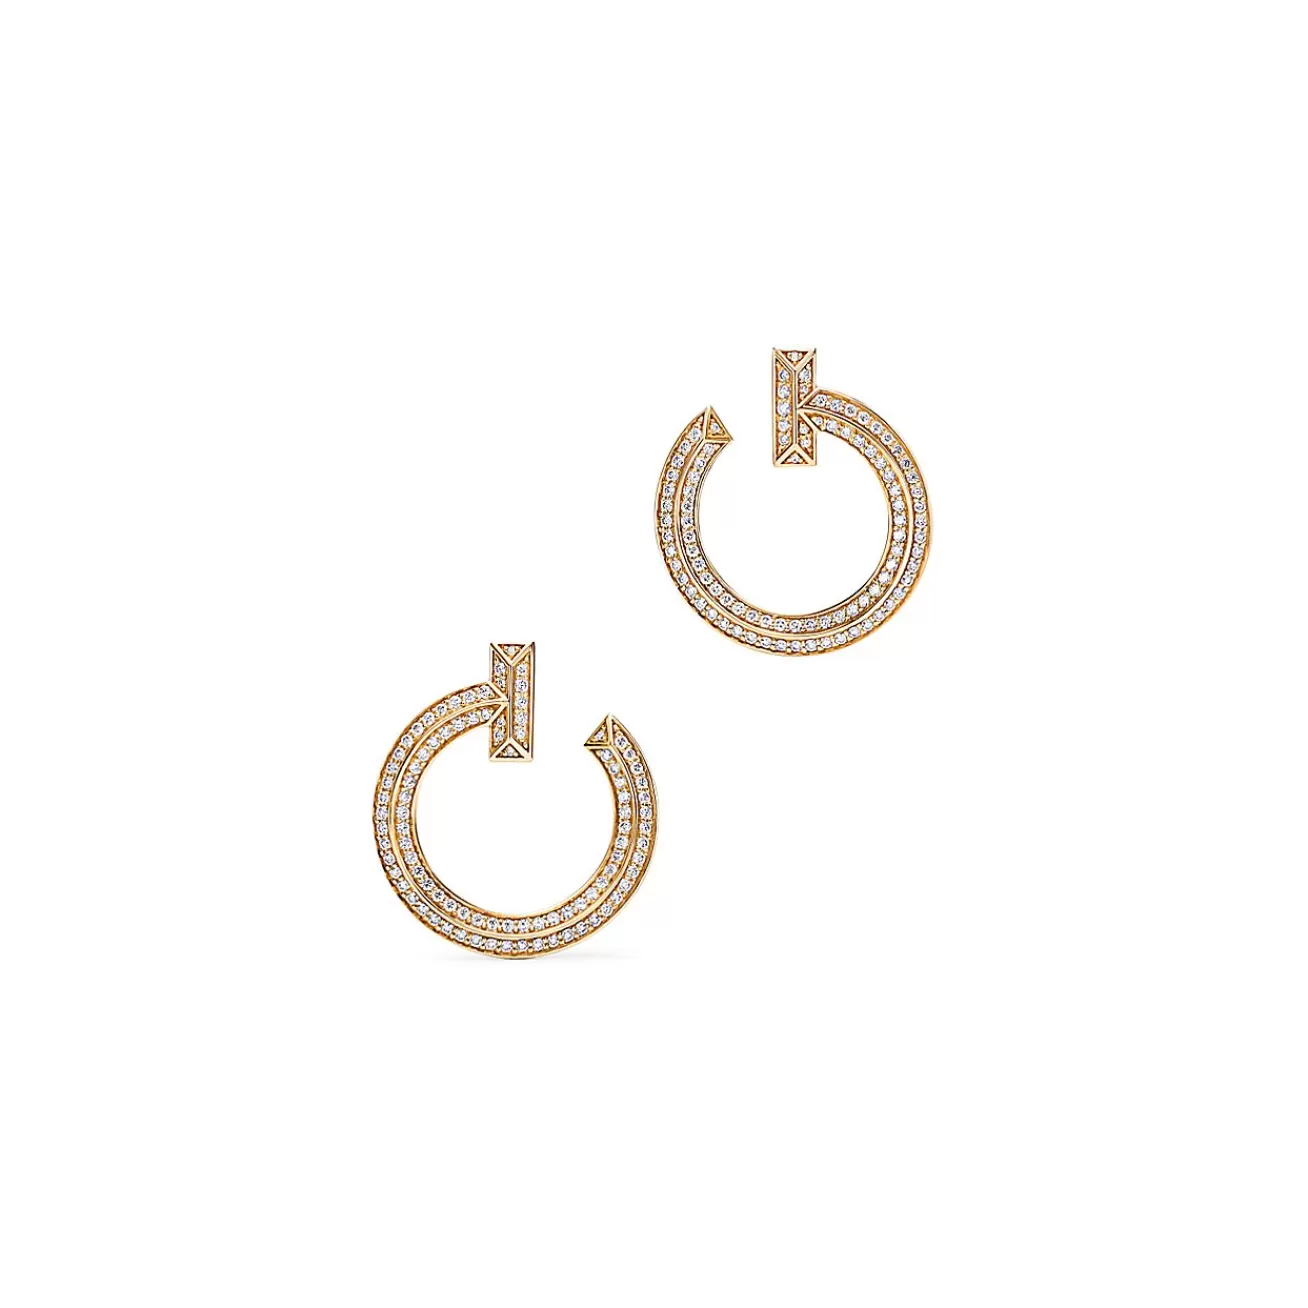 Tiffany & Co. Tiffany T T1 open hoop earrings in 18k gold with diamonds. | ^ Earrings | Gifts for Her